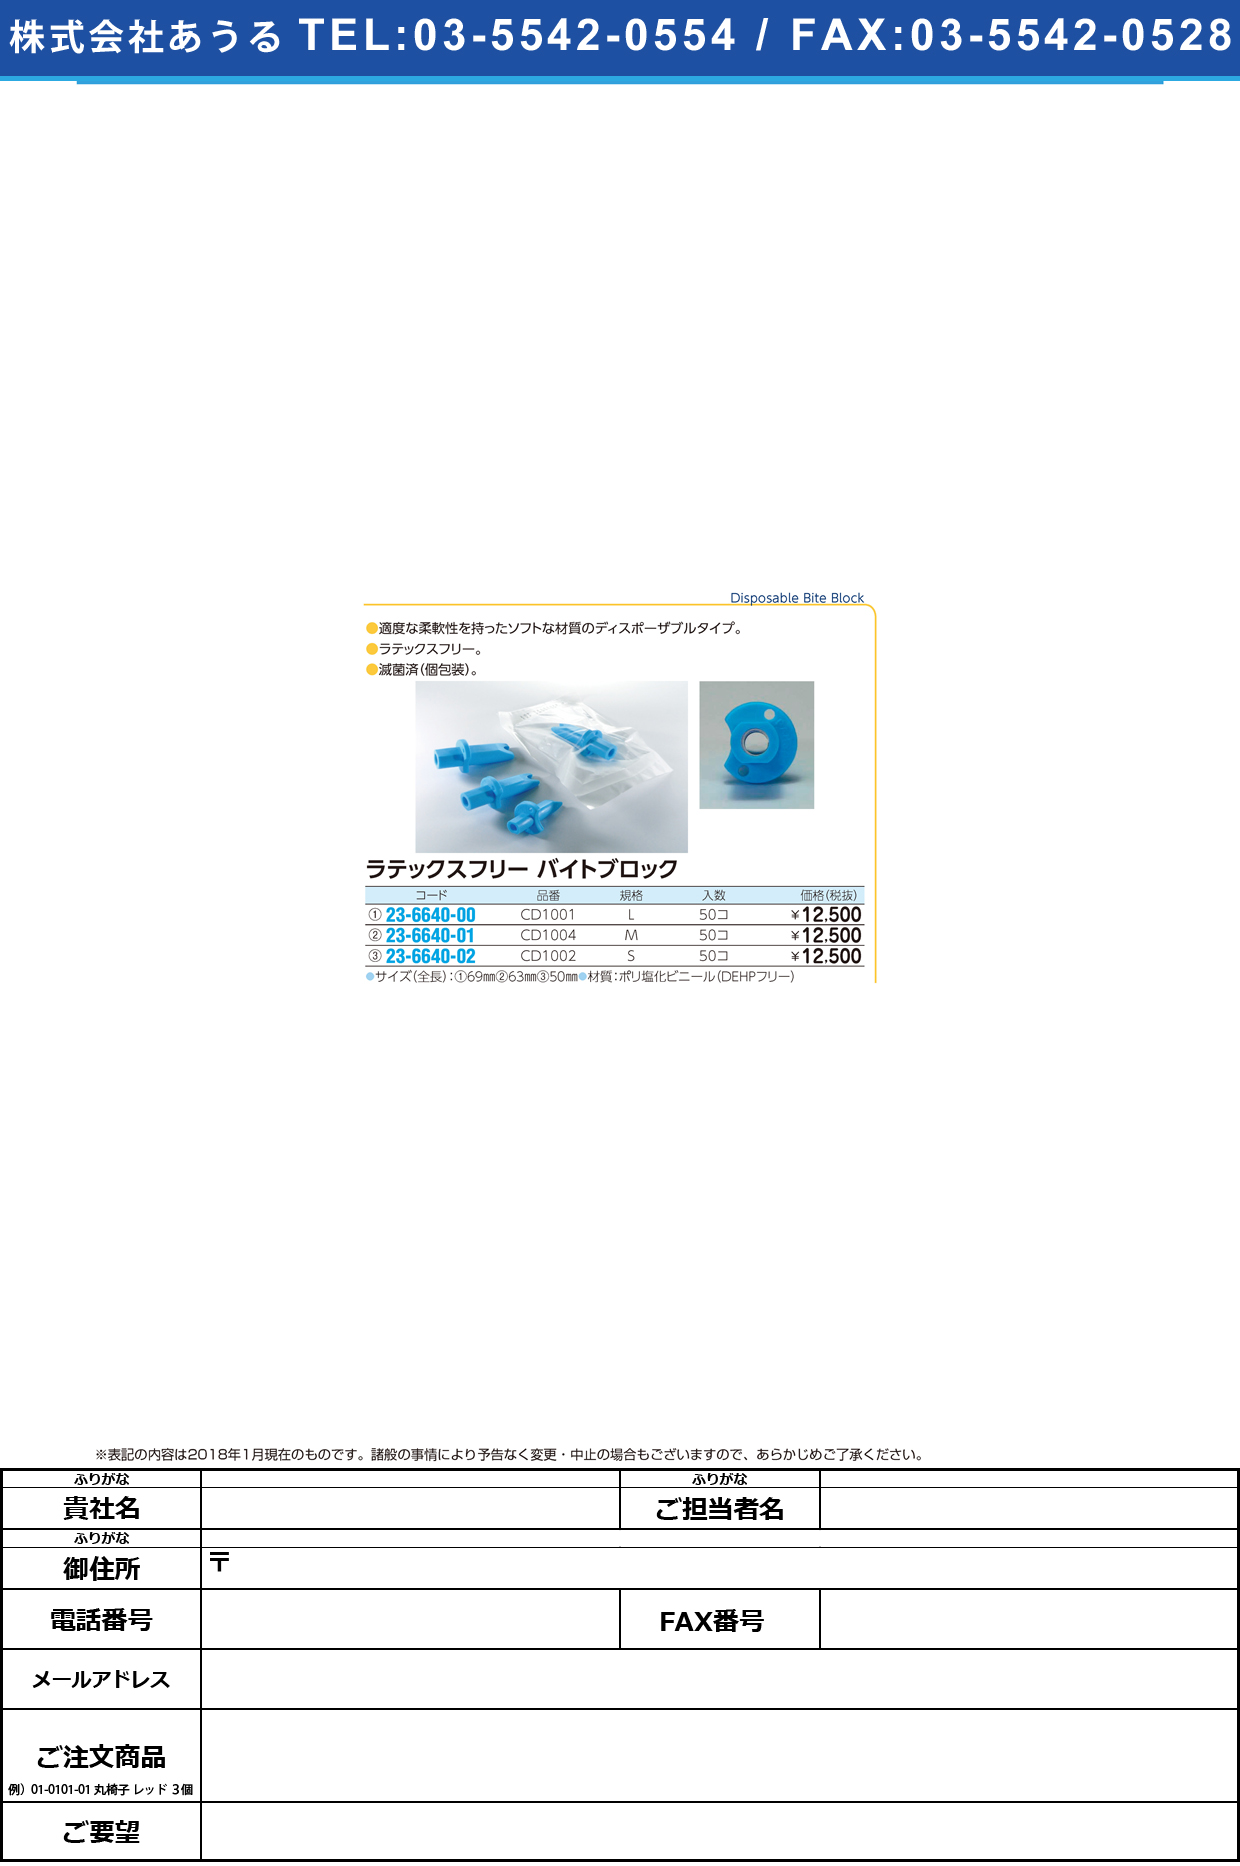 (23-6640-02)ラテックスフリーバイトブロック CD1002(S)50ｺｲﾘ ﾗﾃｯｸｽﾌﾘｰﾊﾞｲﾄﾌﾞﾛｯｸ【1袋単位】【2018年カタログ商品】